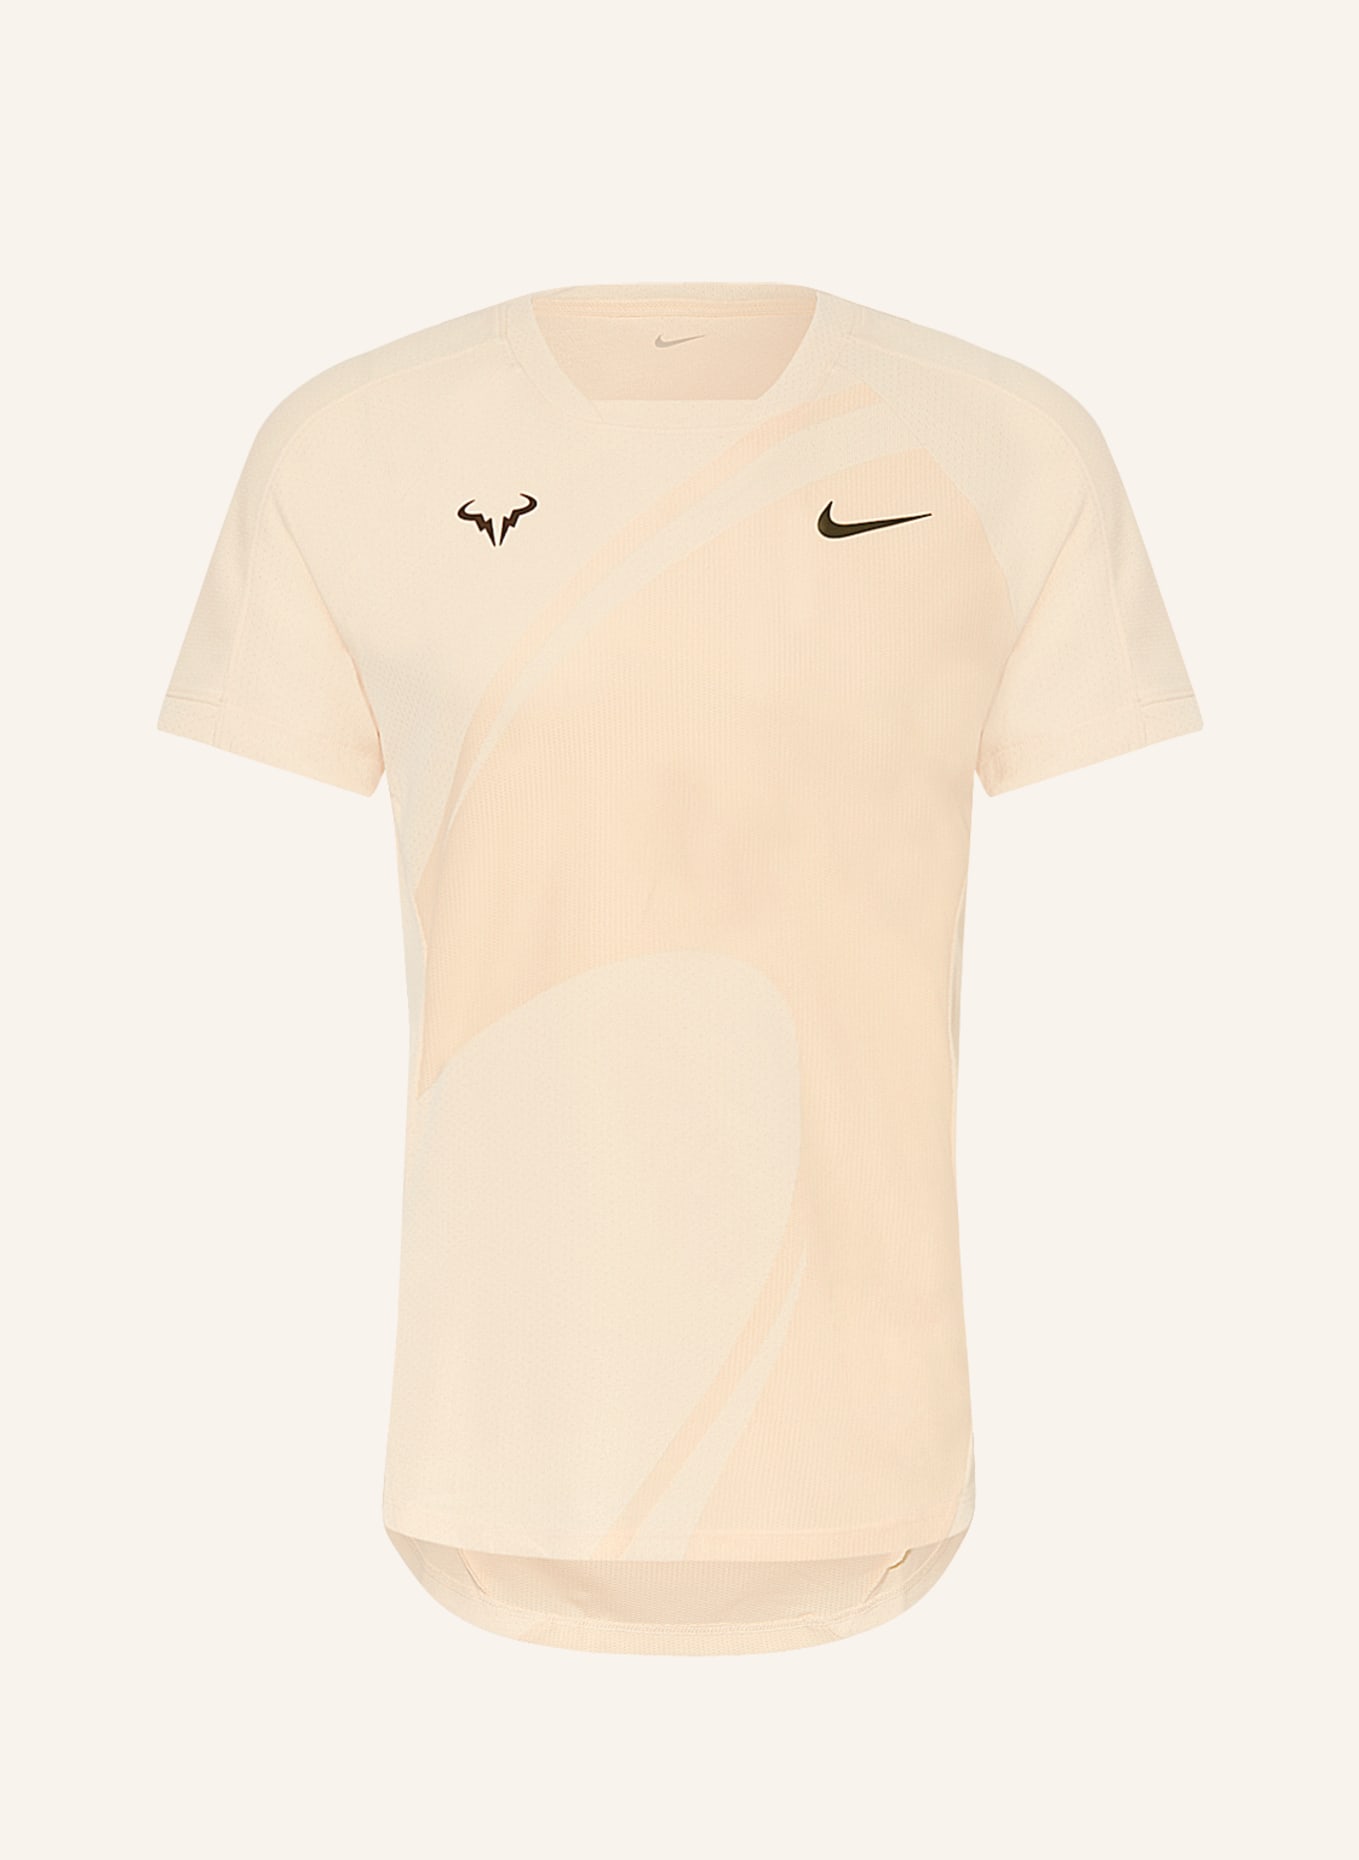 Nike T-Shirt RAFA, Color: LIGHT ORANGE (Image 1)